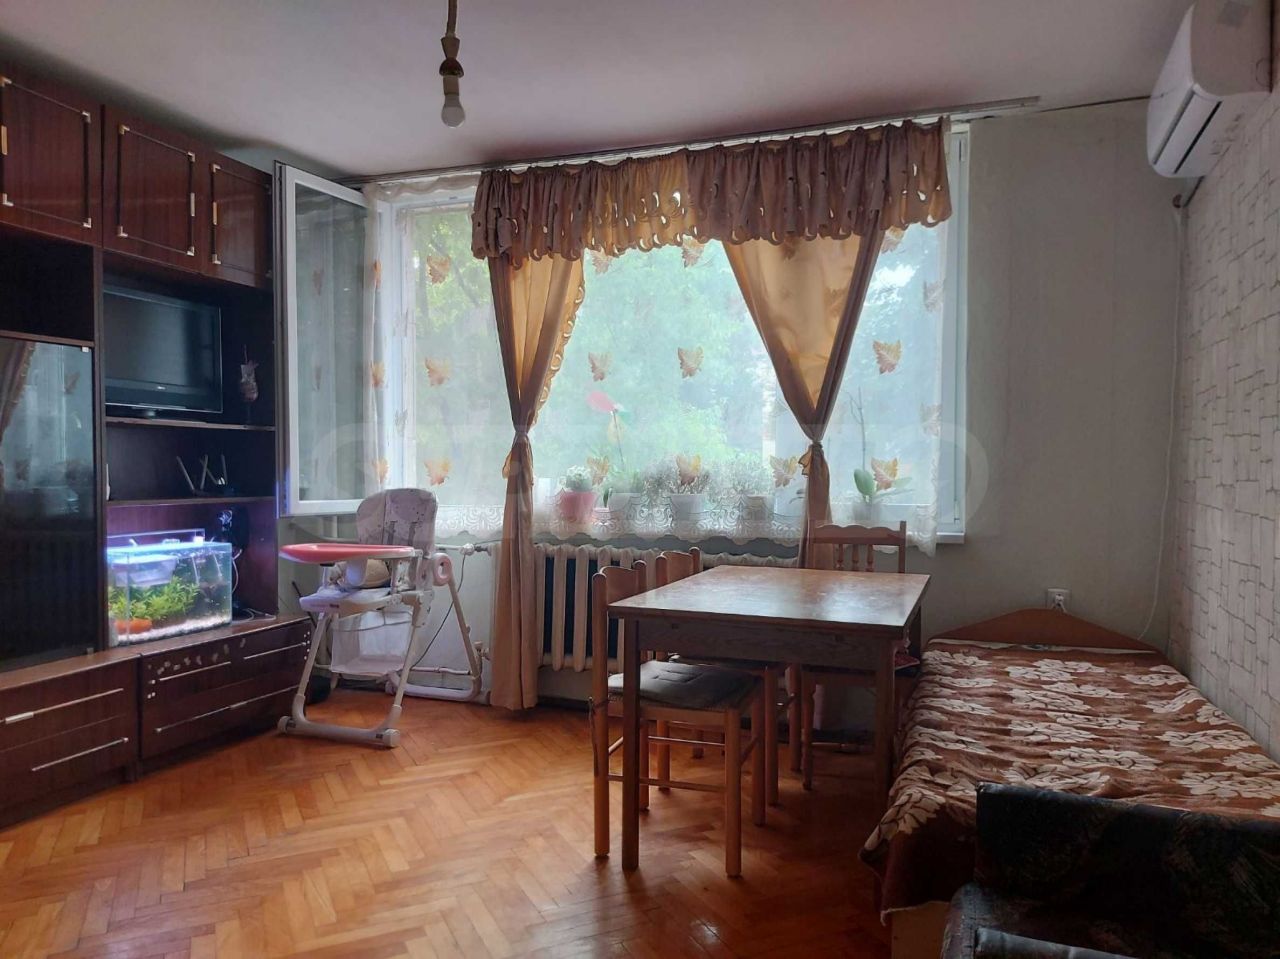 Apartment in Ruse, Bulgaria, 42 sq.m - picture 1